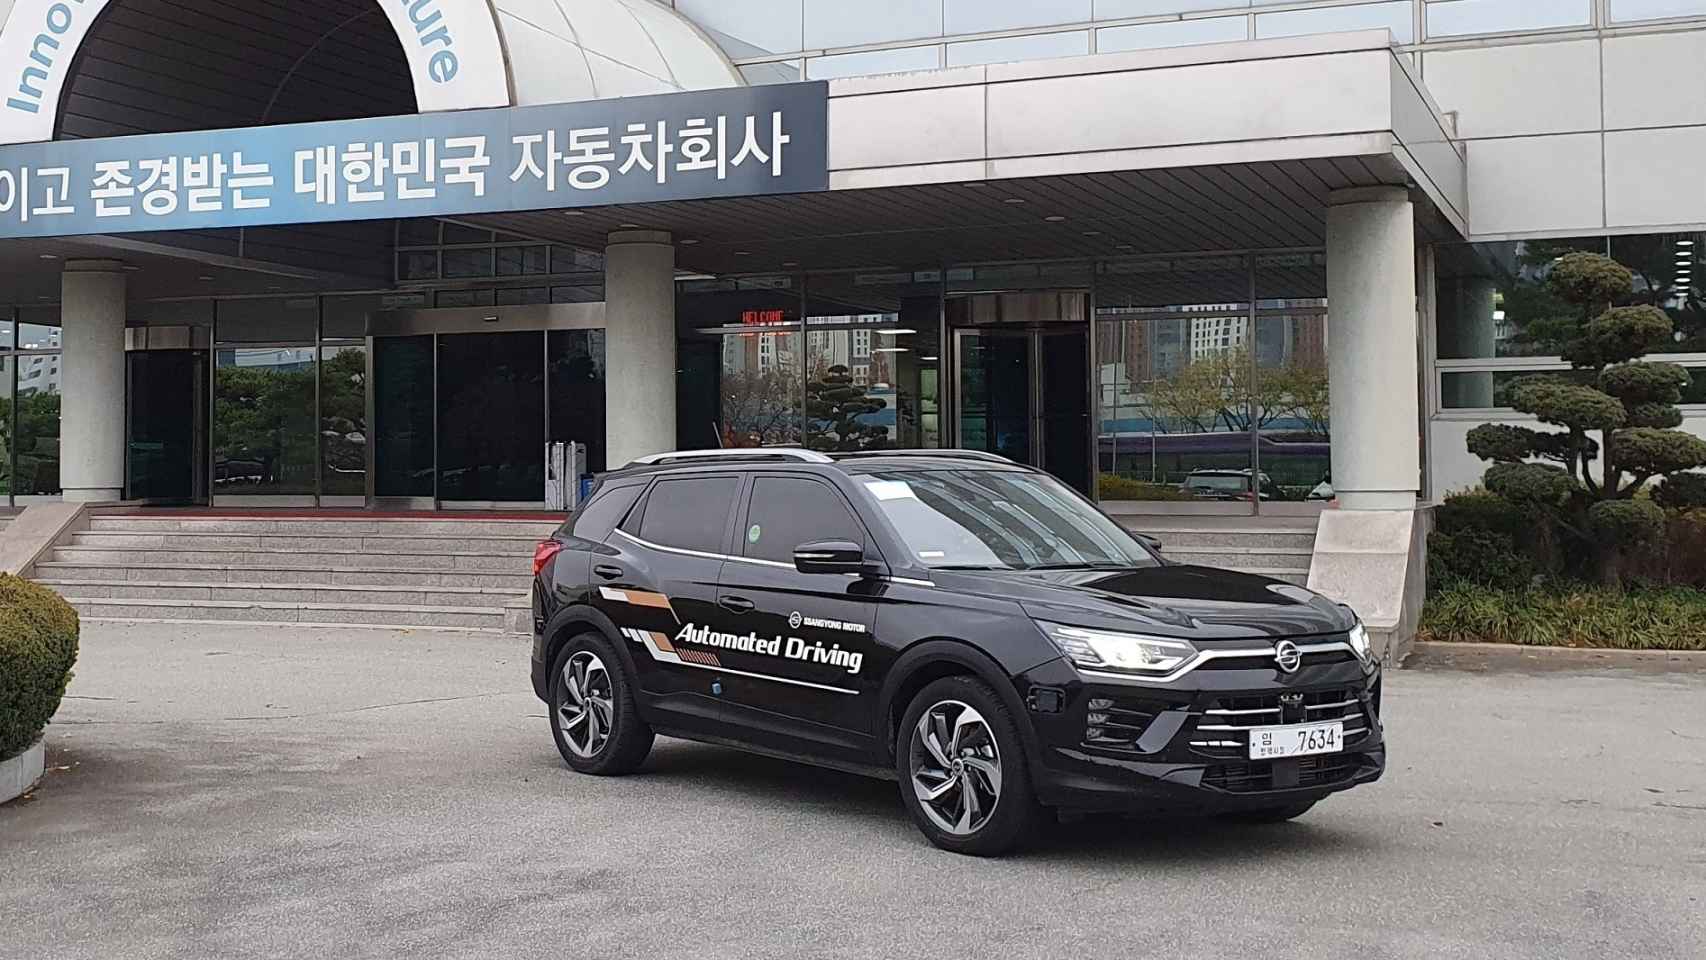 SsangYong inicia las pruebas de su tecnología de vehículo autónomo nivel 3.